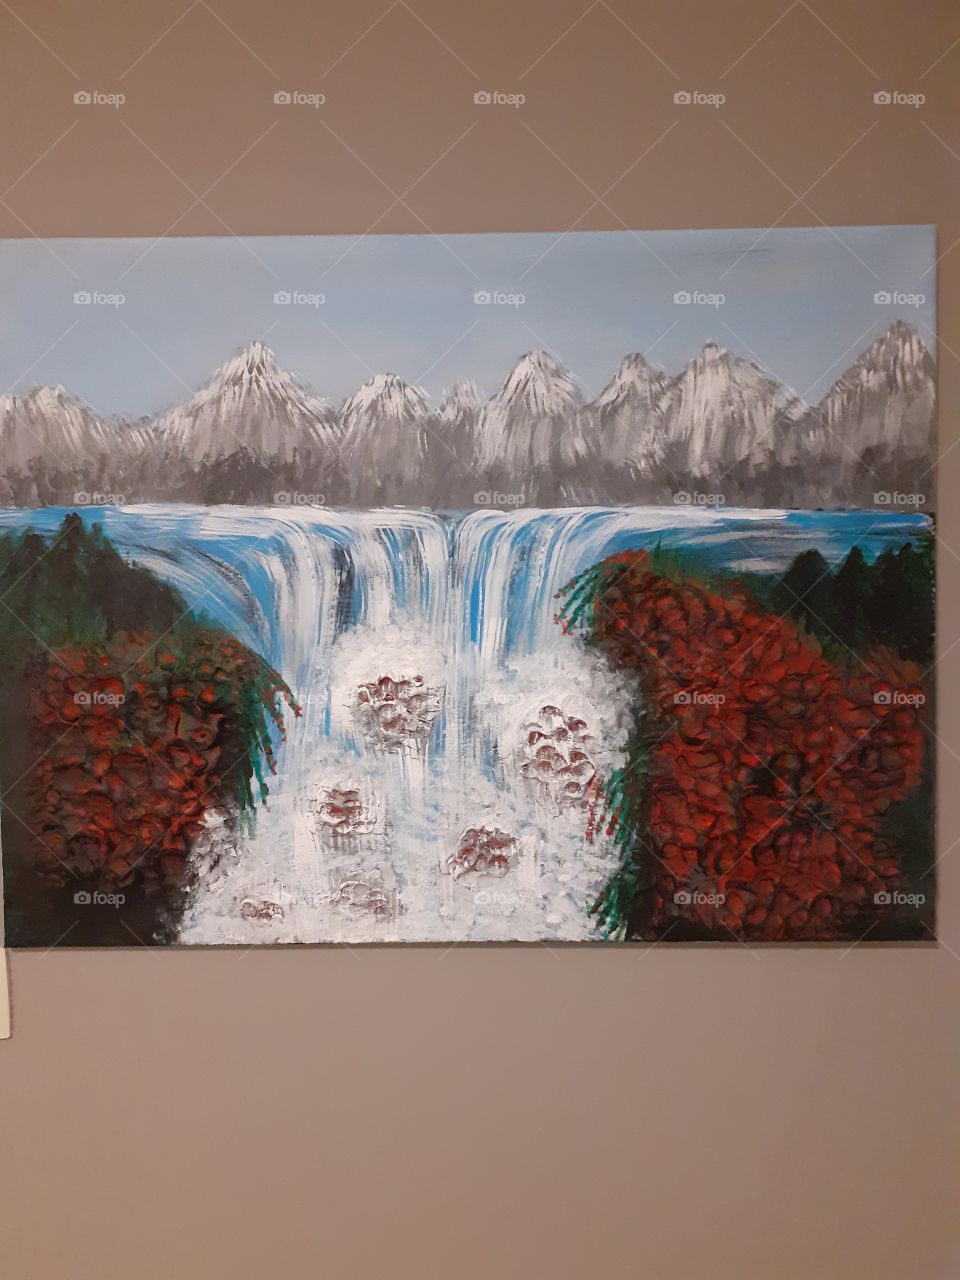 waterfall acrylpaint on canvas